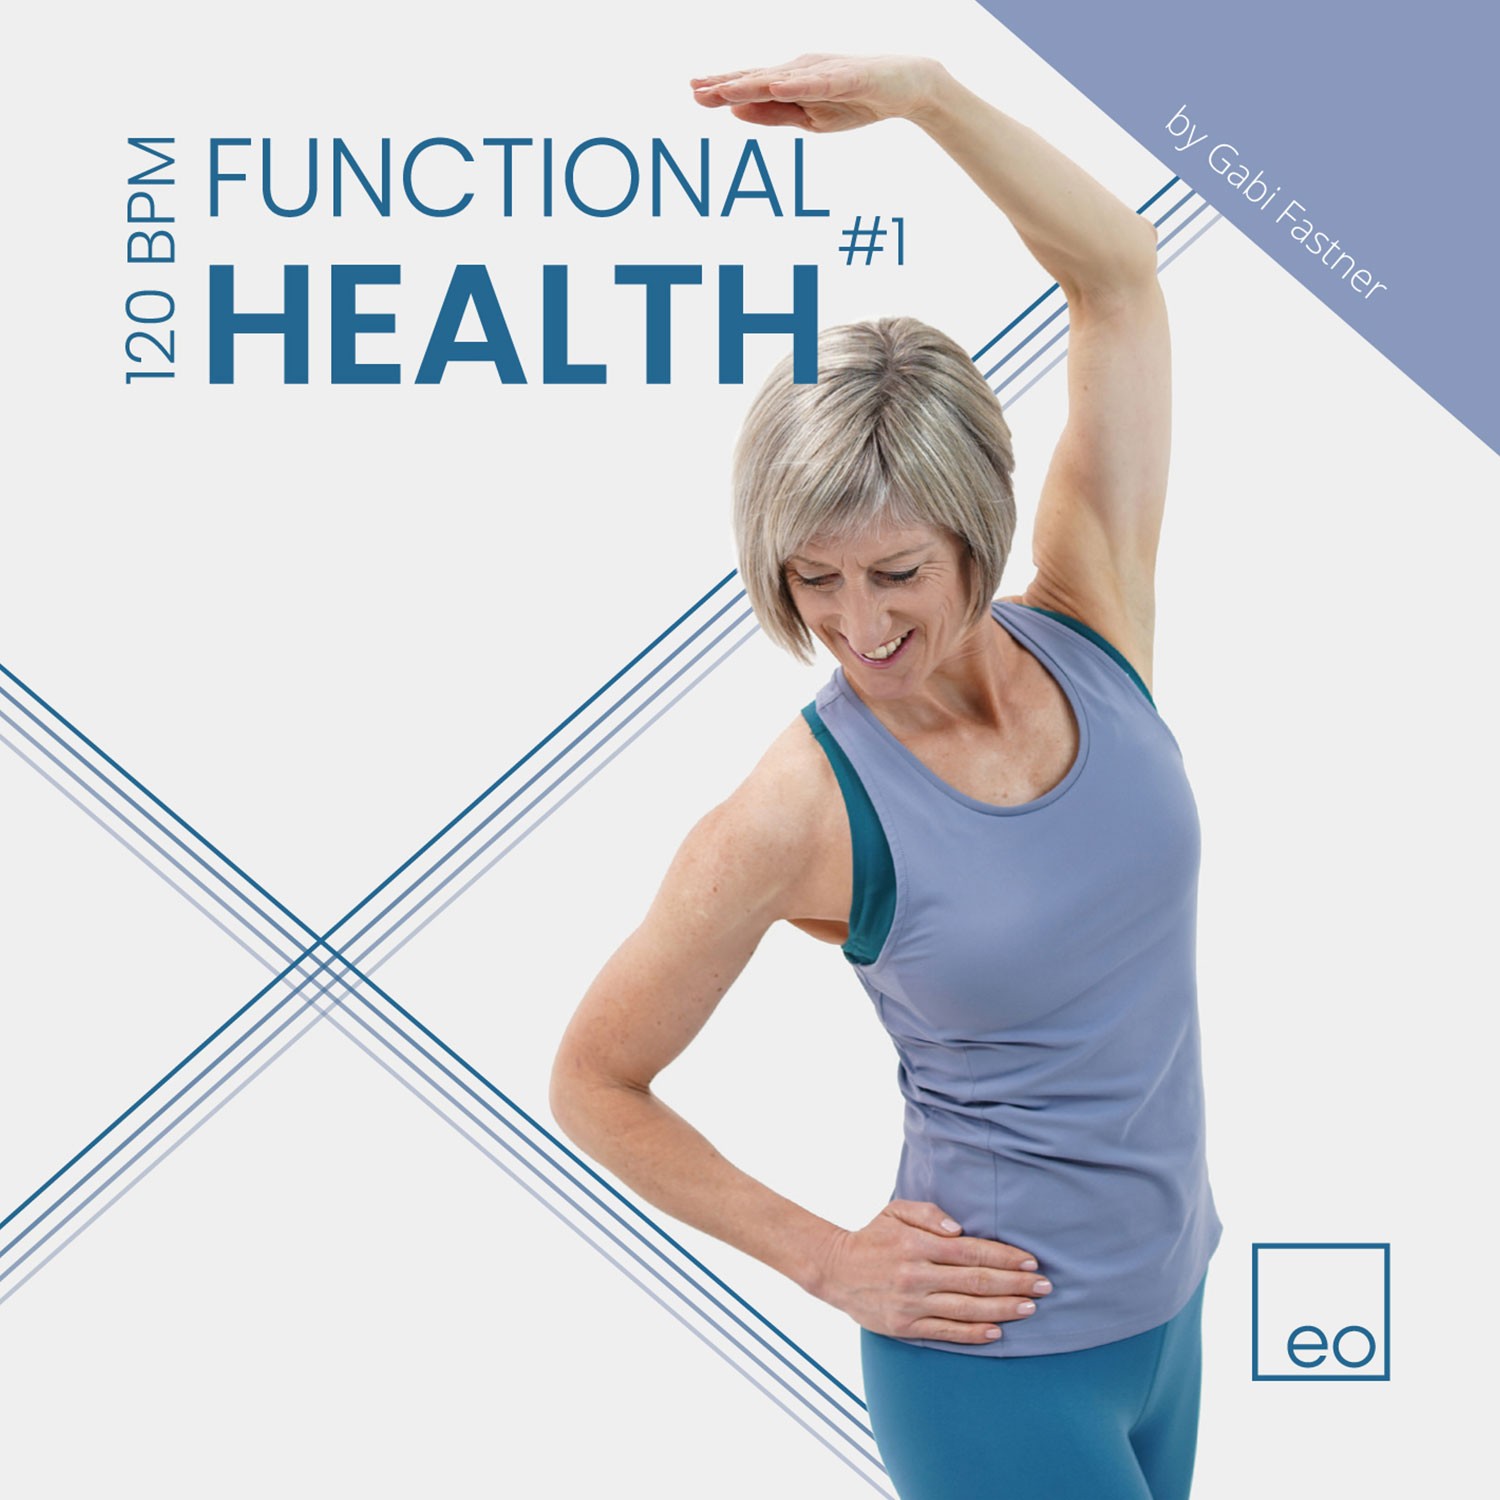 EO Functional Health 1 by Gabi Fastner